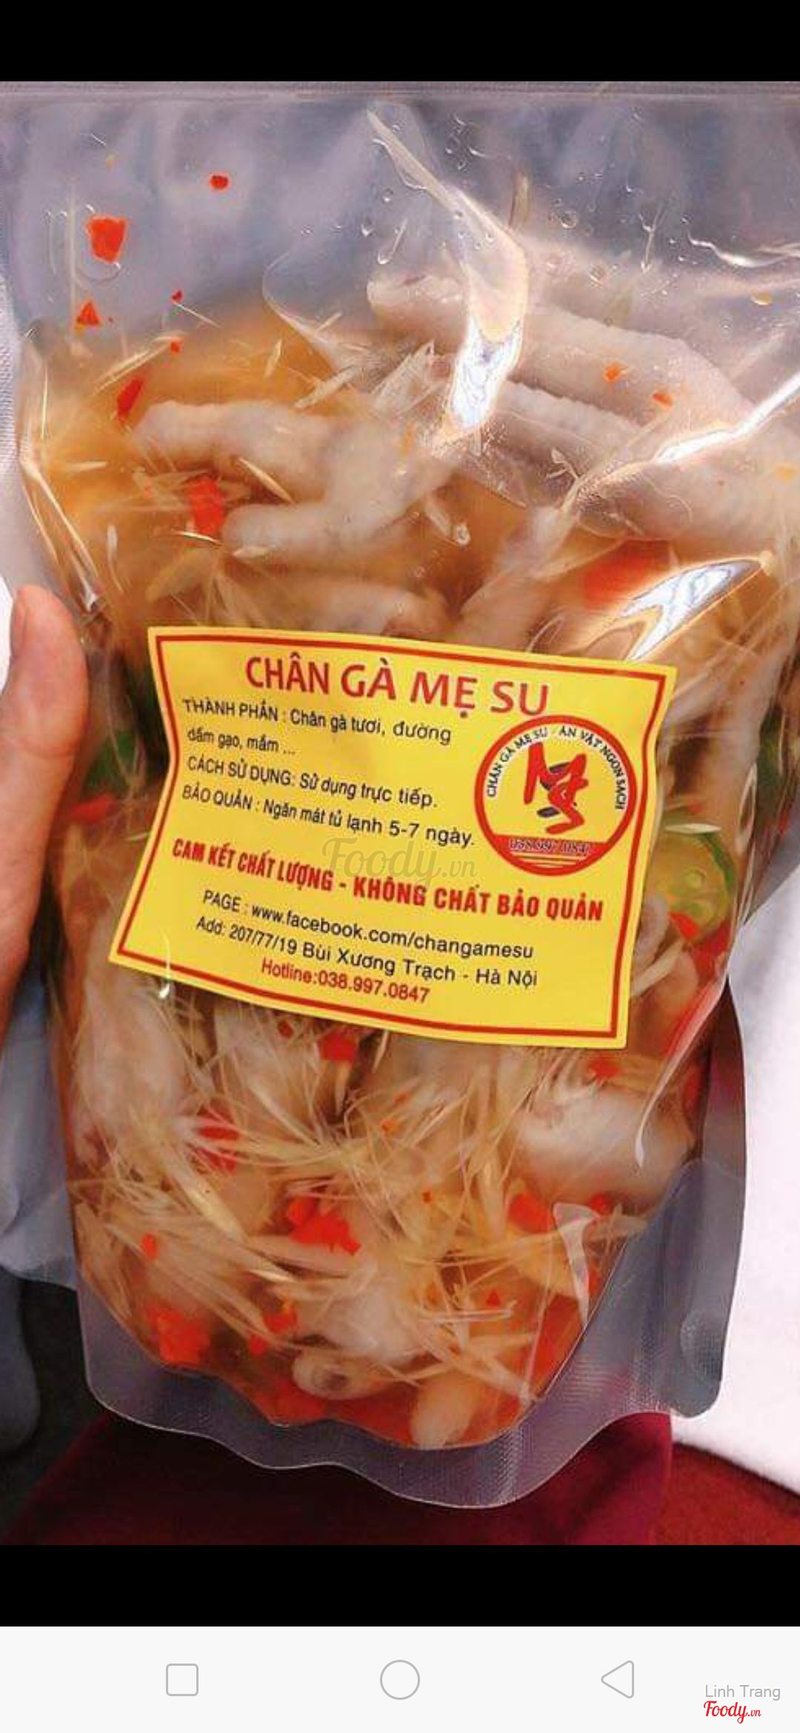 Chân Gà Sả Ớt Mẹ Su - Shop Online Ở Quận Thanh Xuân, Hà Nội | Foody.Vn